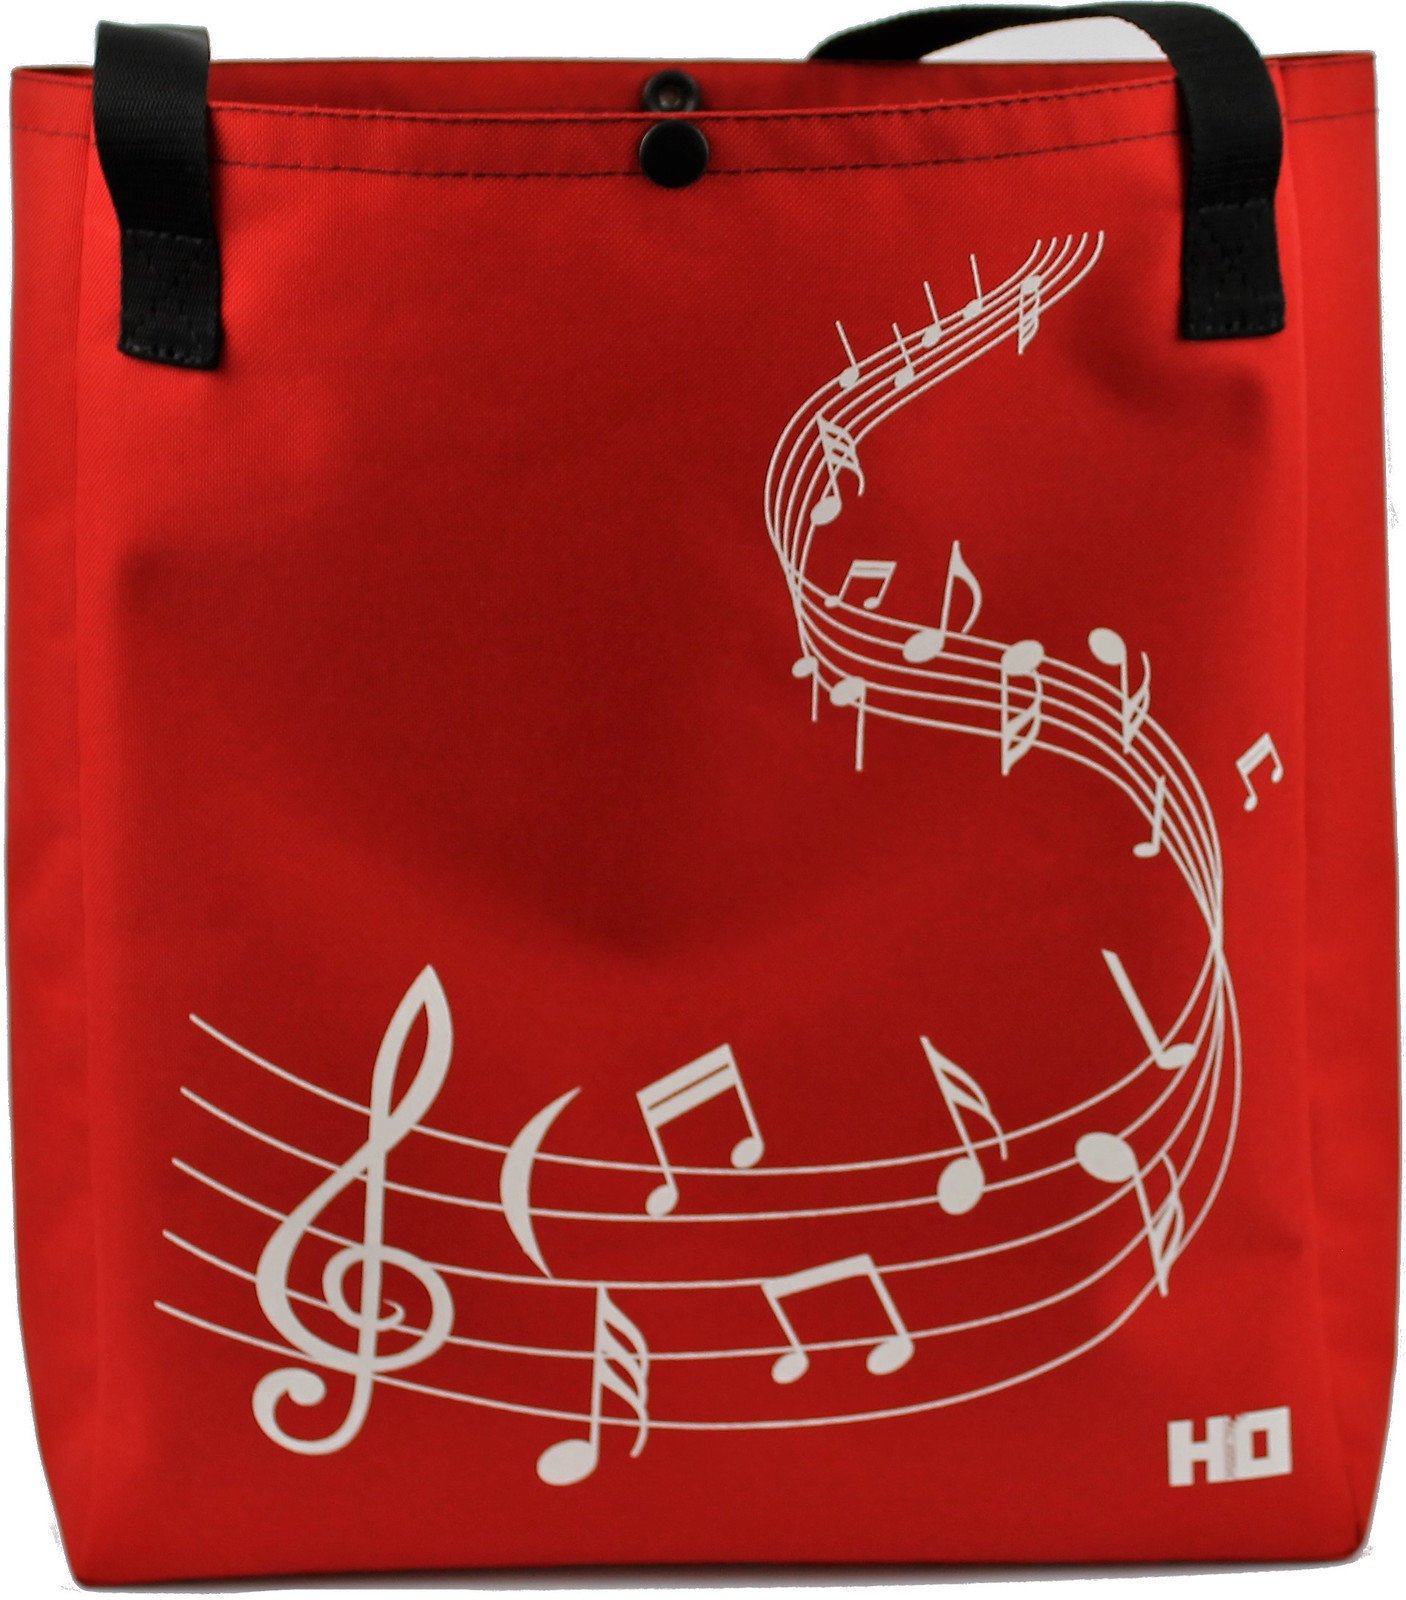 Nakupovalna torba
 Hudební Obaly H-O Melody Red-Red